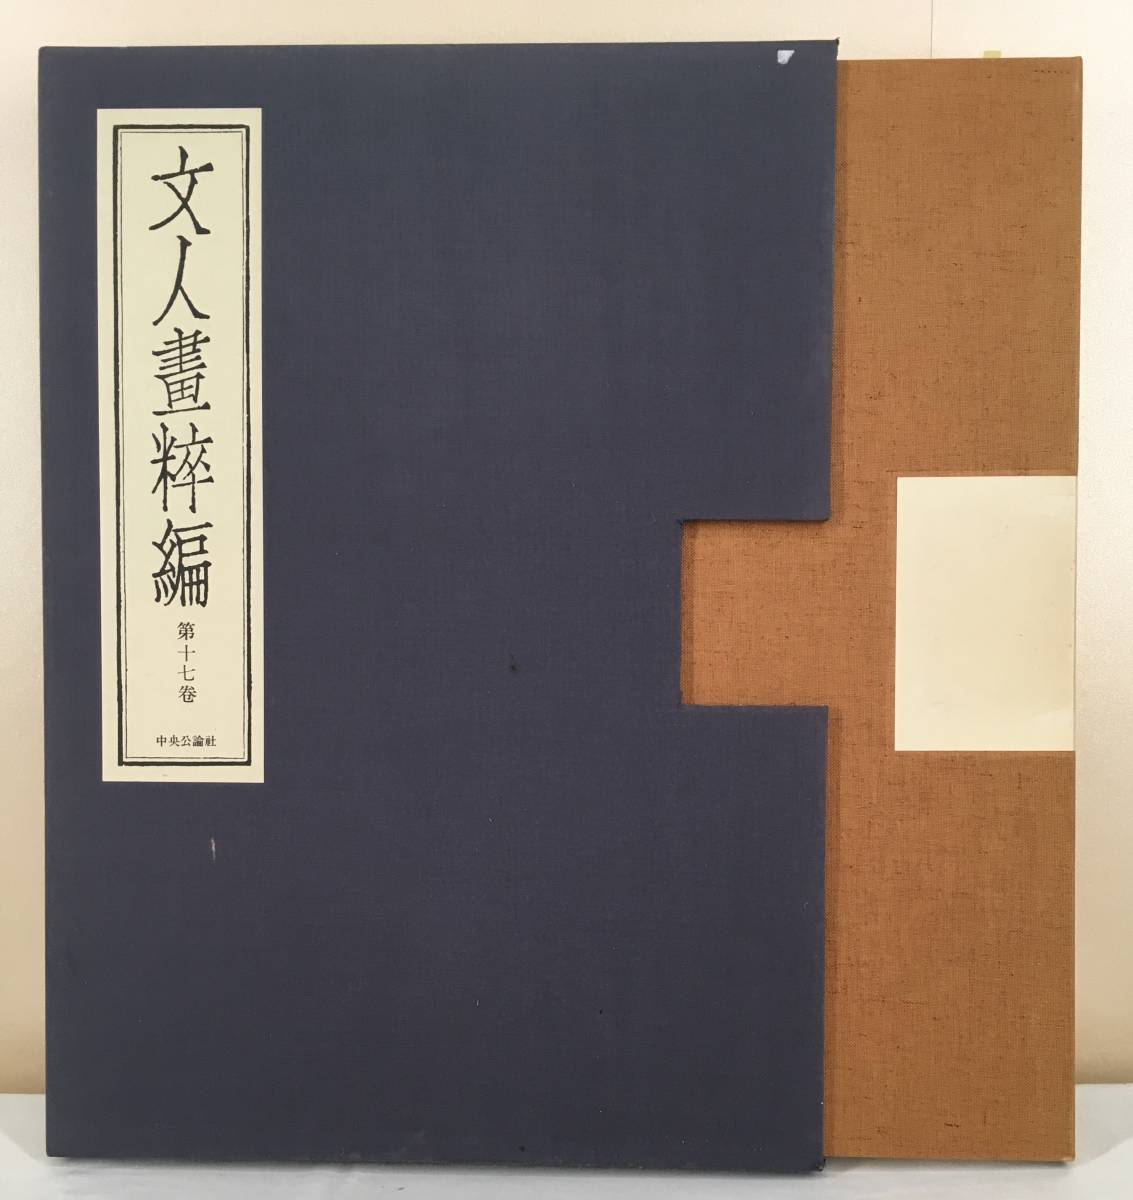 Clair !/[Tano Village Takeda/Literature Gaishi Edition/Chuokoronsha]/Limité à 980 exemplaires/Bungo Nanga/Takeda City, Préfecture d'Ōita, ouvrages d'art, peinture, Peinture à l'encre